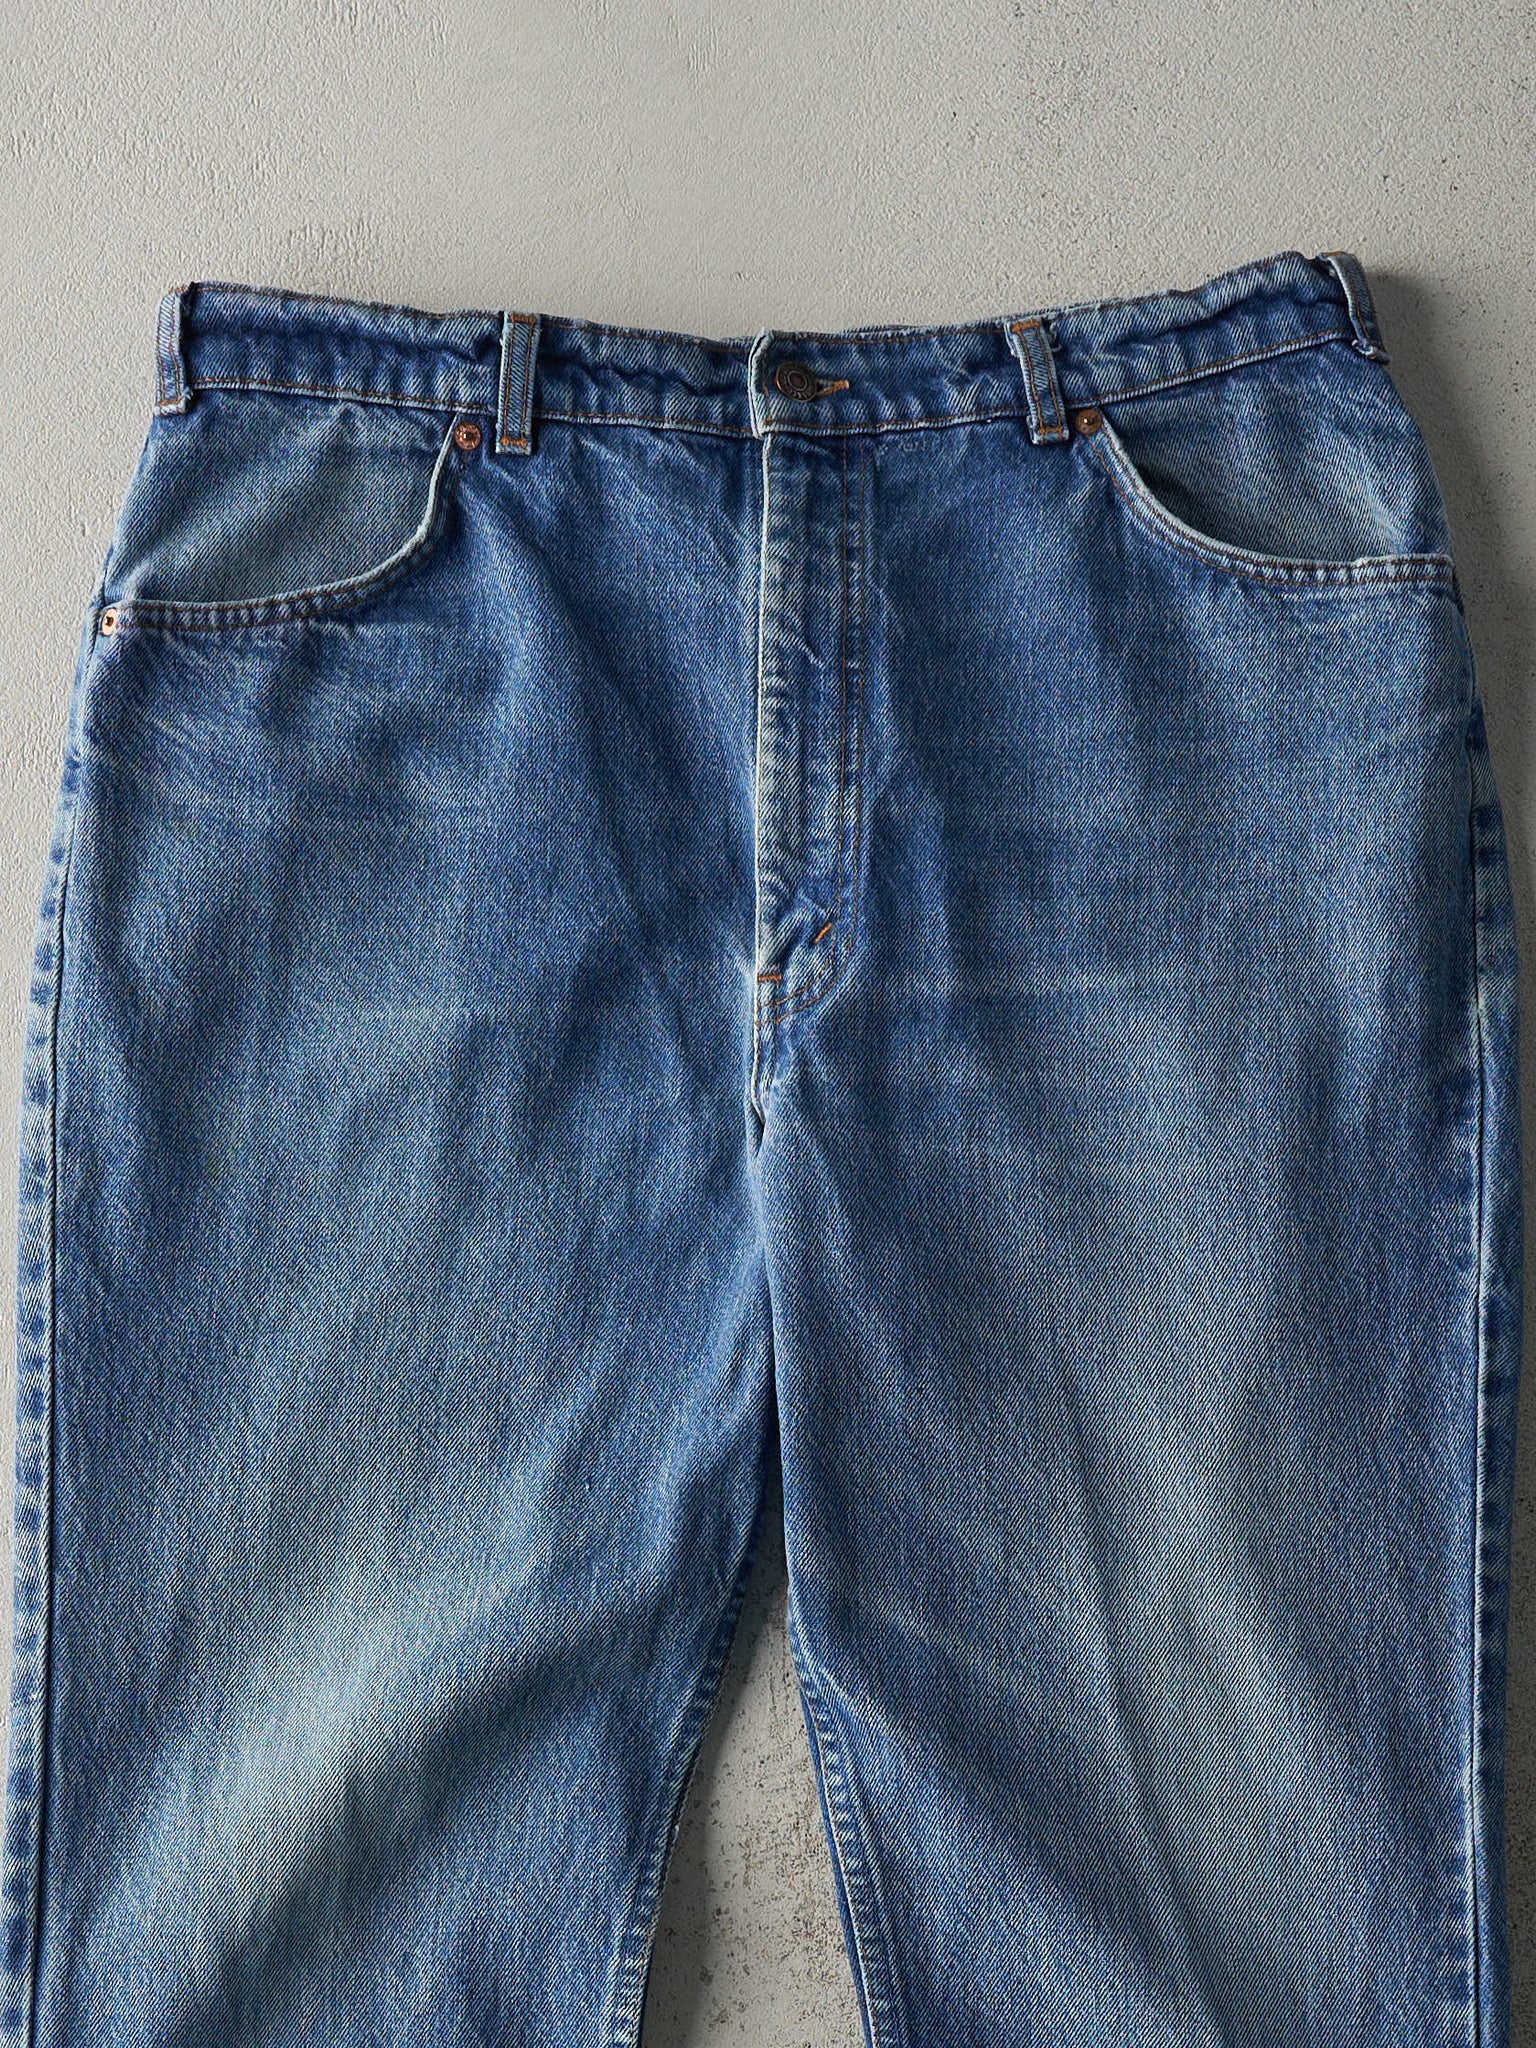 Vintage 80s Mid Wash Levi's Orange Tab 619 Jeans (35.5x30)